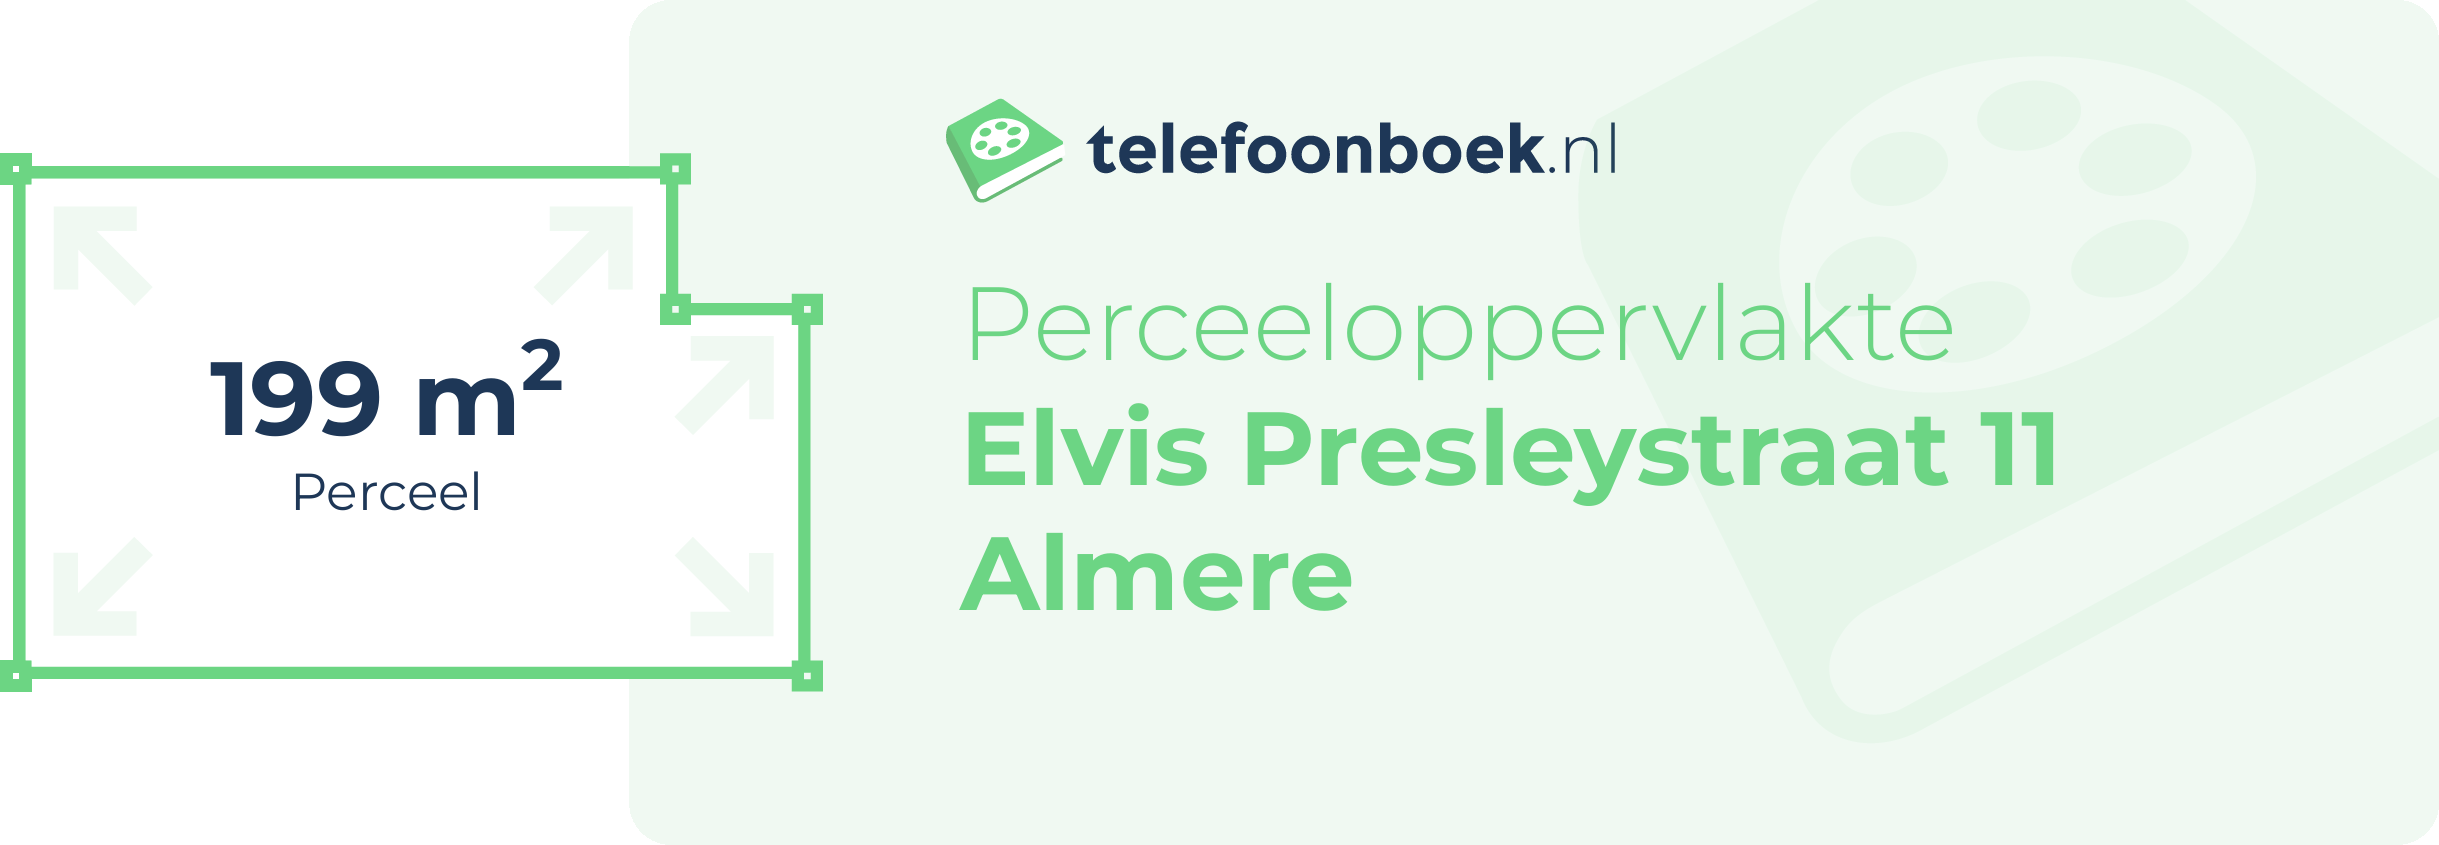 Perceeloppervlakte Elvis Presleystraat 11 Almere